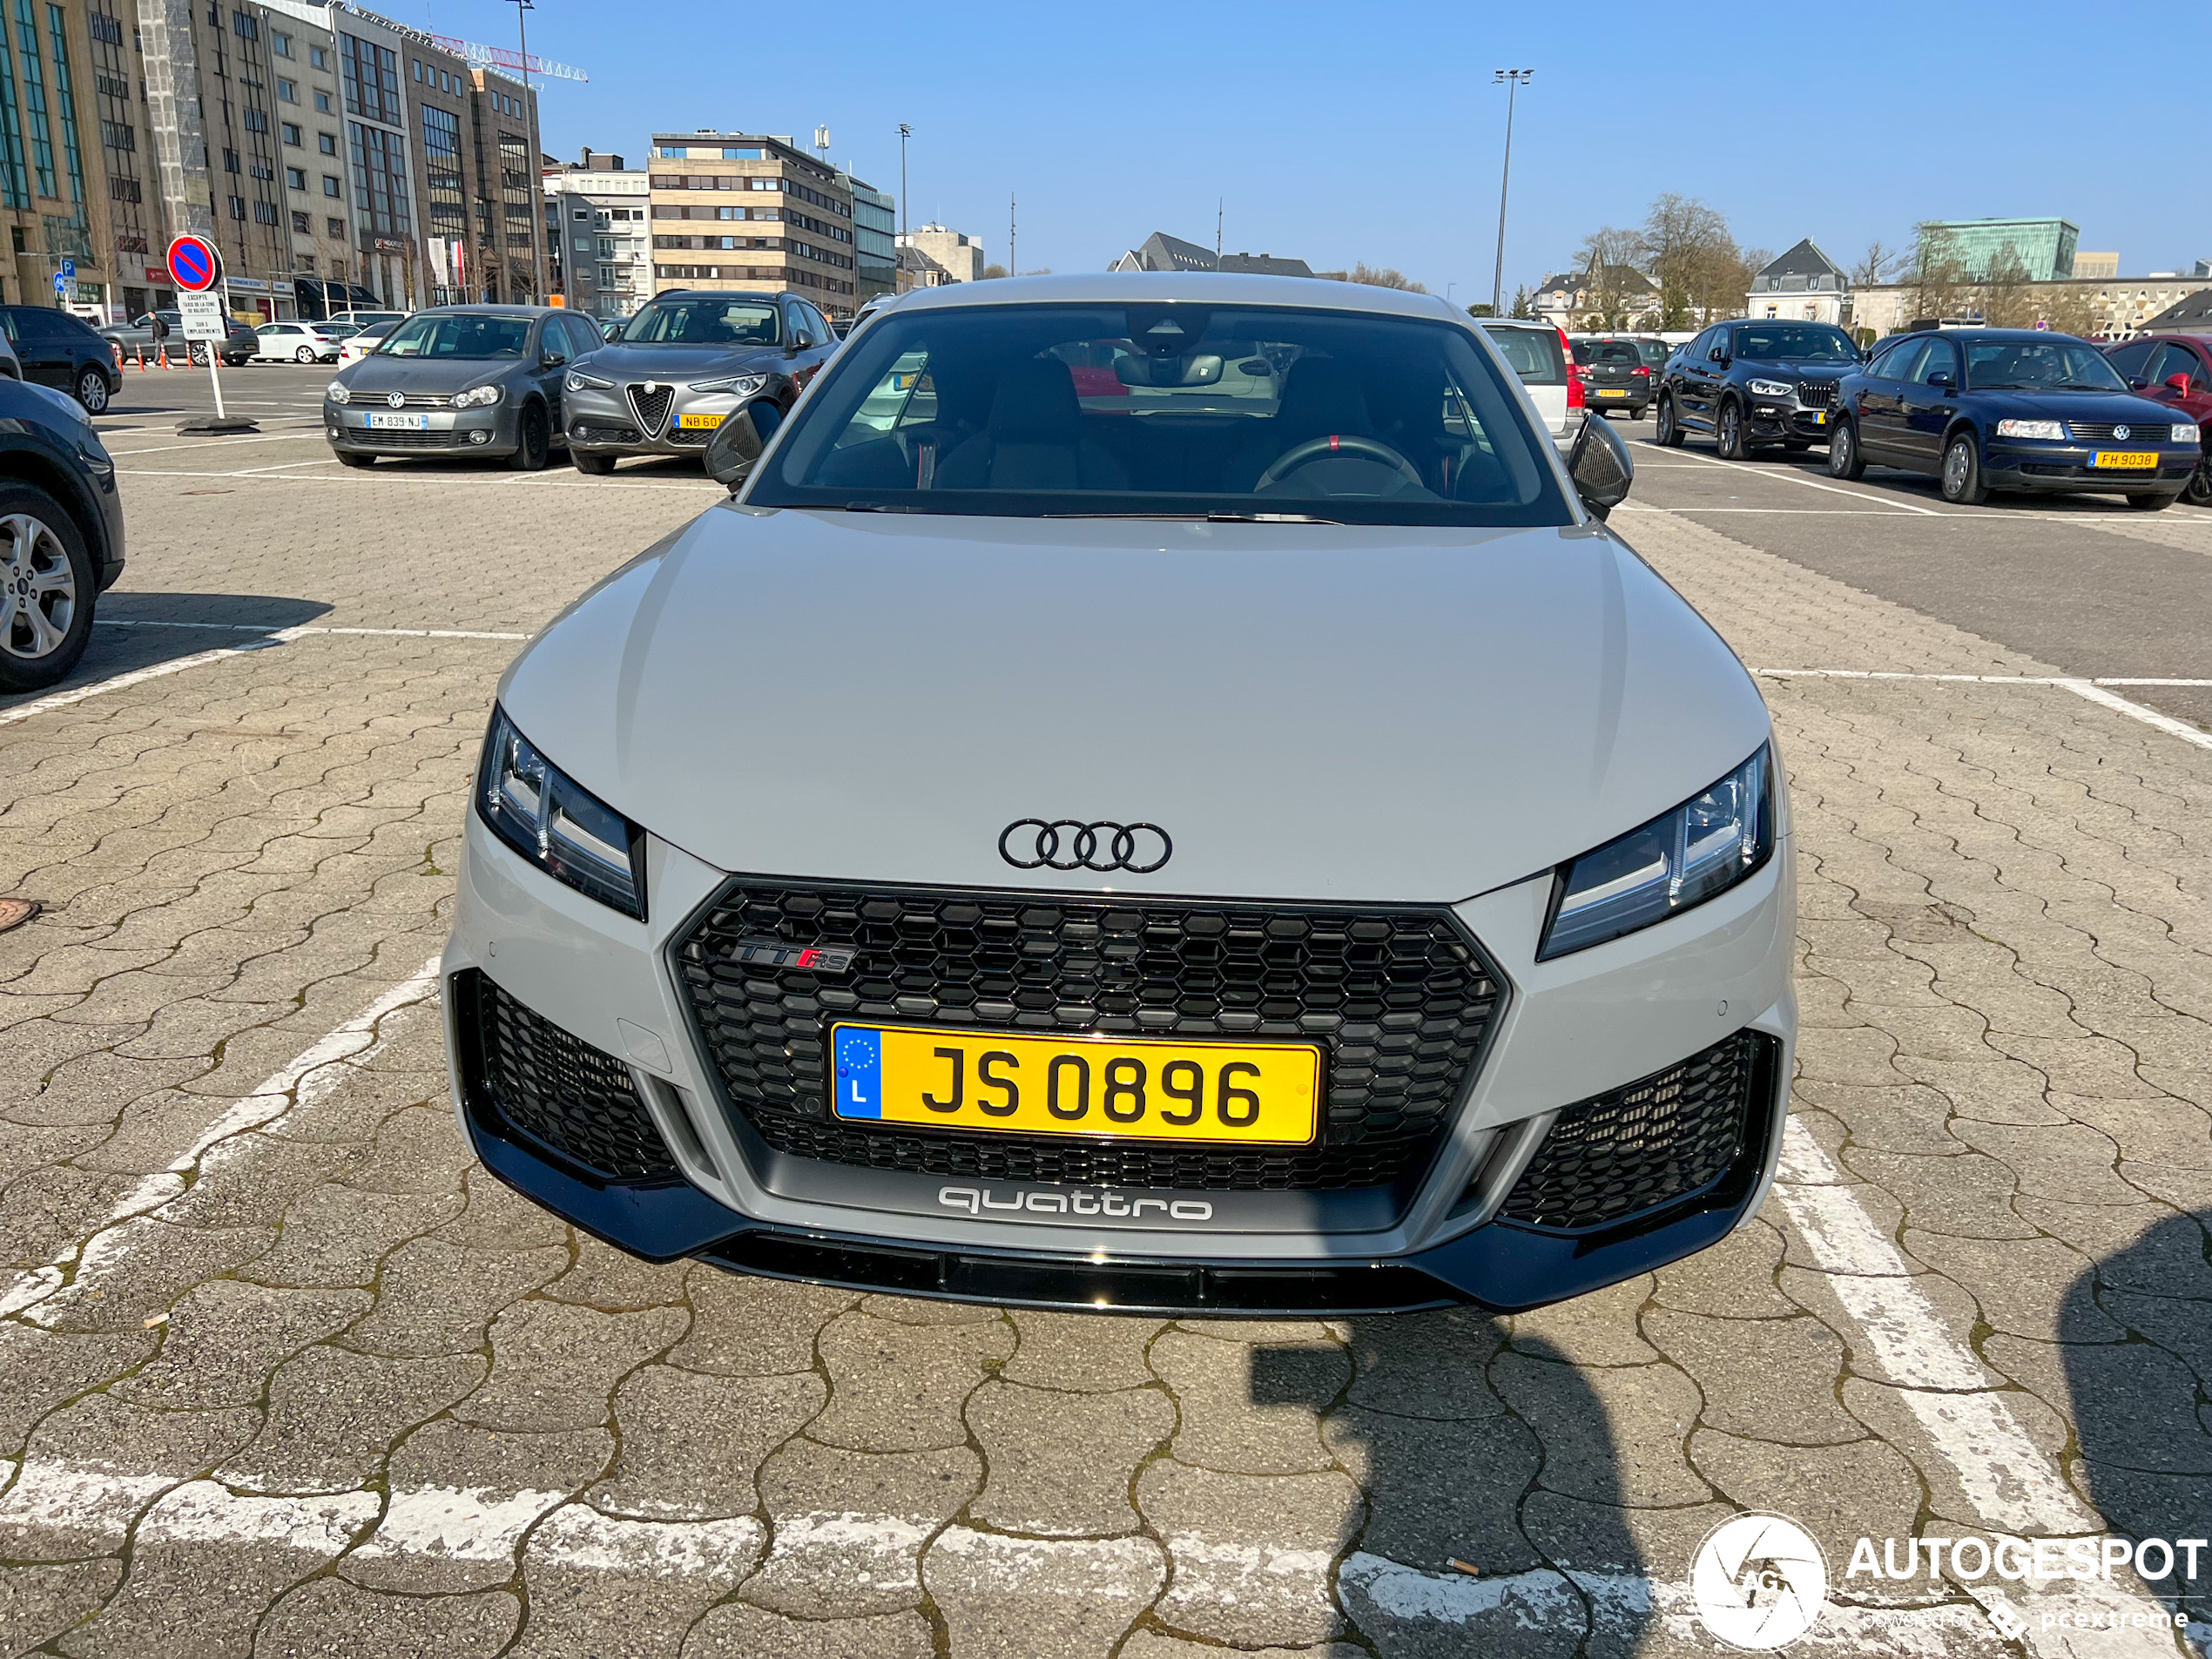 Audi TT-RS 2019